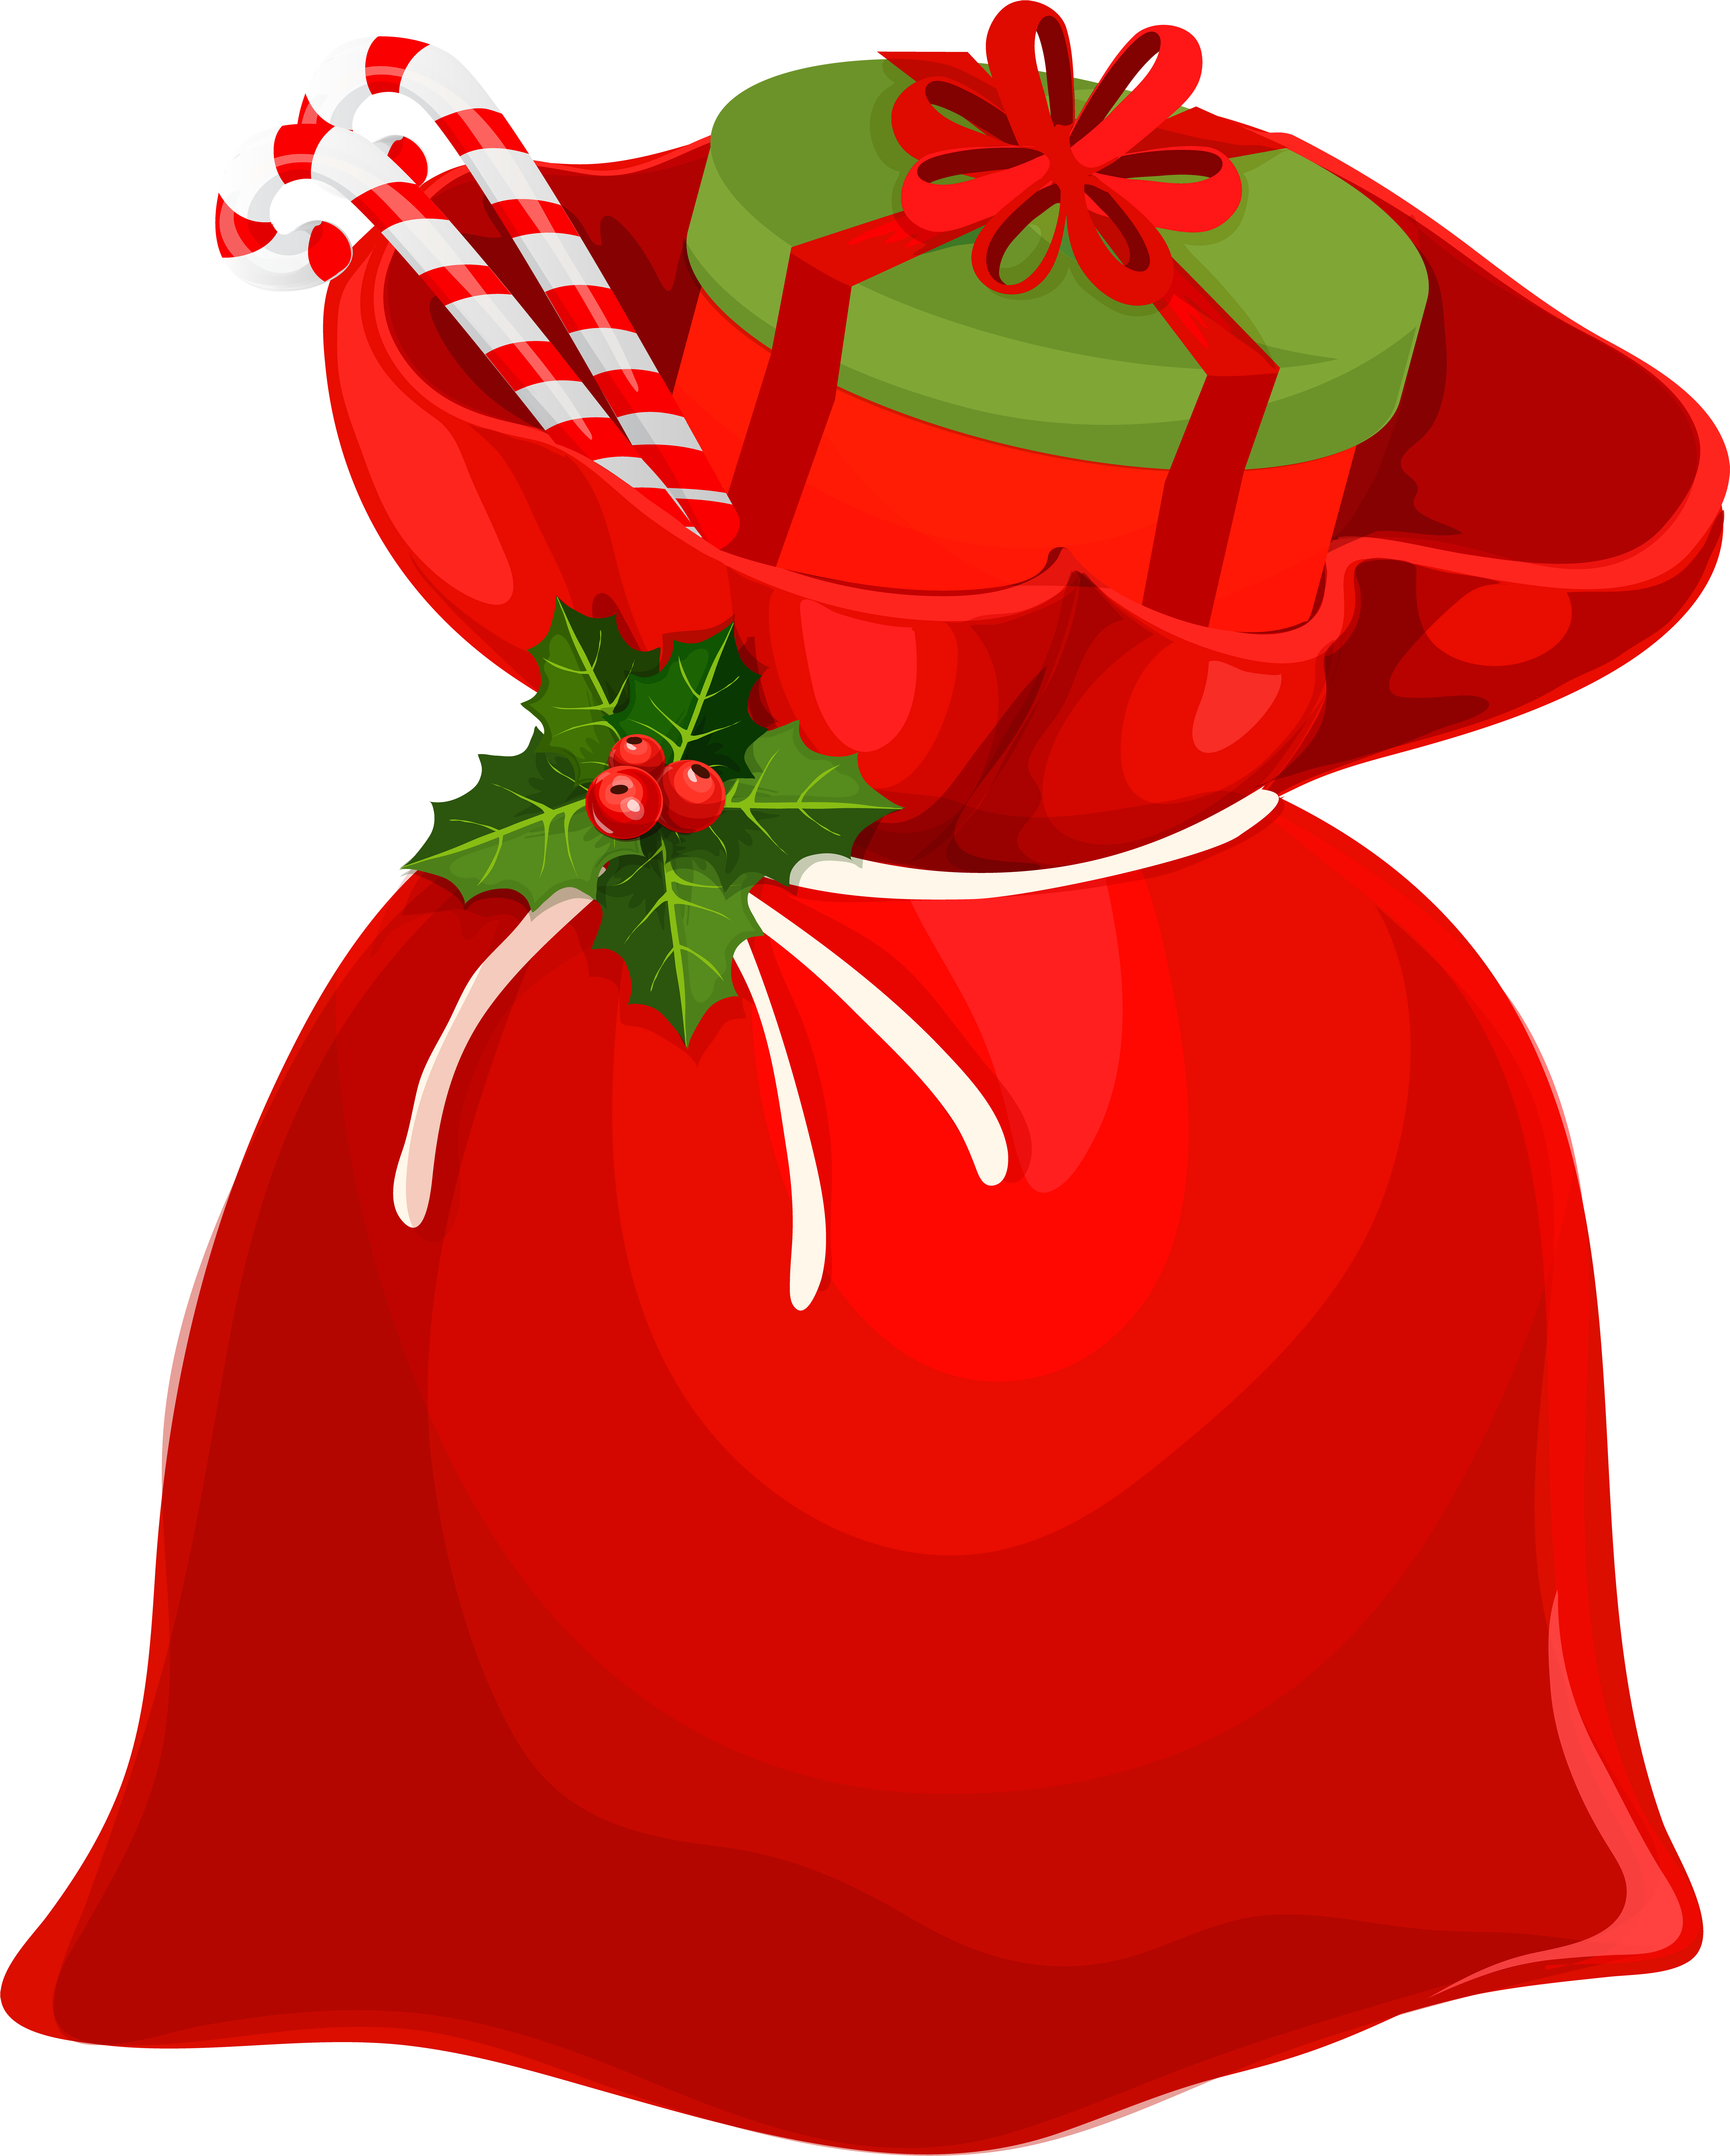 Christmas Santa Bag Png Clip Art Image - Santa Claus Gift Bag (481x600), Png Download